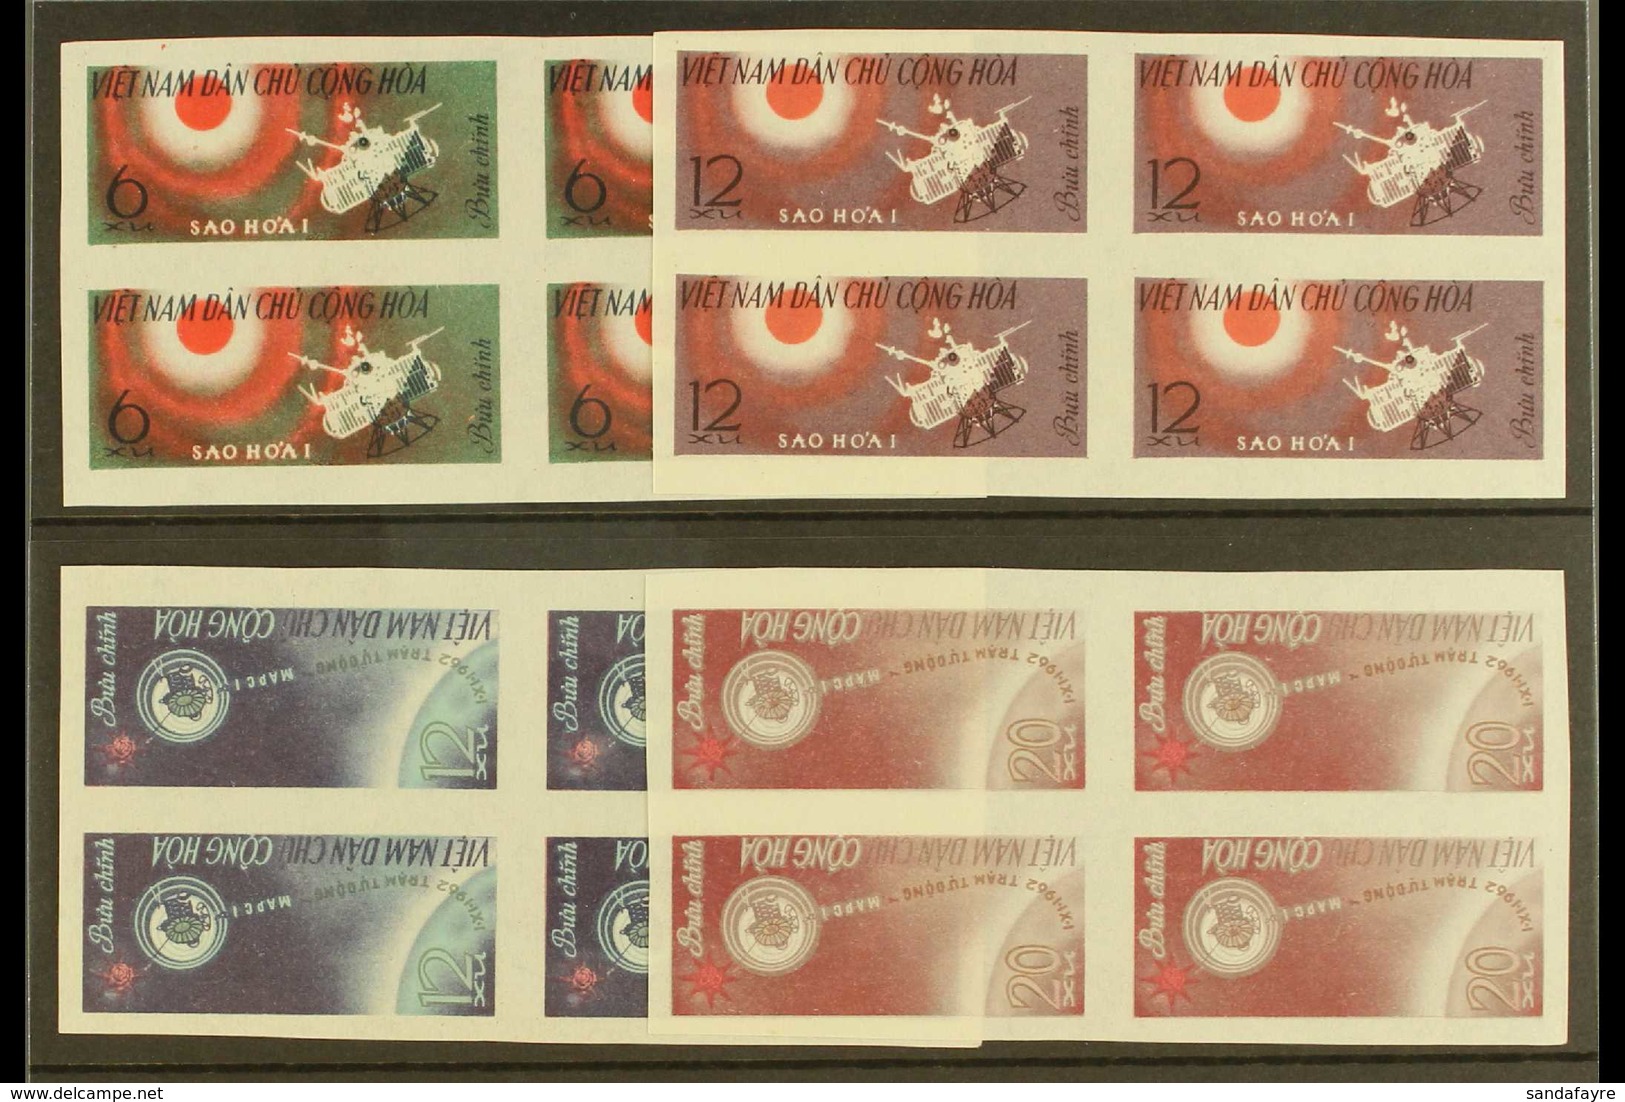 1963 Soviet Rocket "Mars I", SG N260/63, IMPERF SET IN BLOCKS OF 4, Unused & Without Gum (16 Stamps) For More Images, Pl - Viêt-Nam